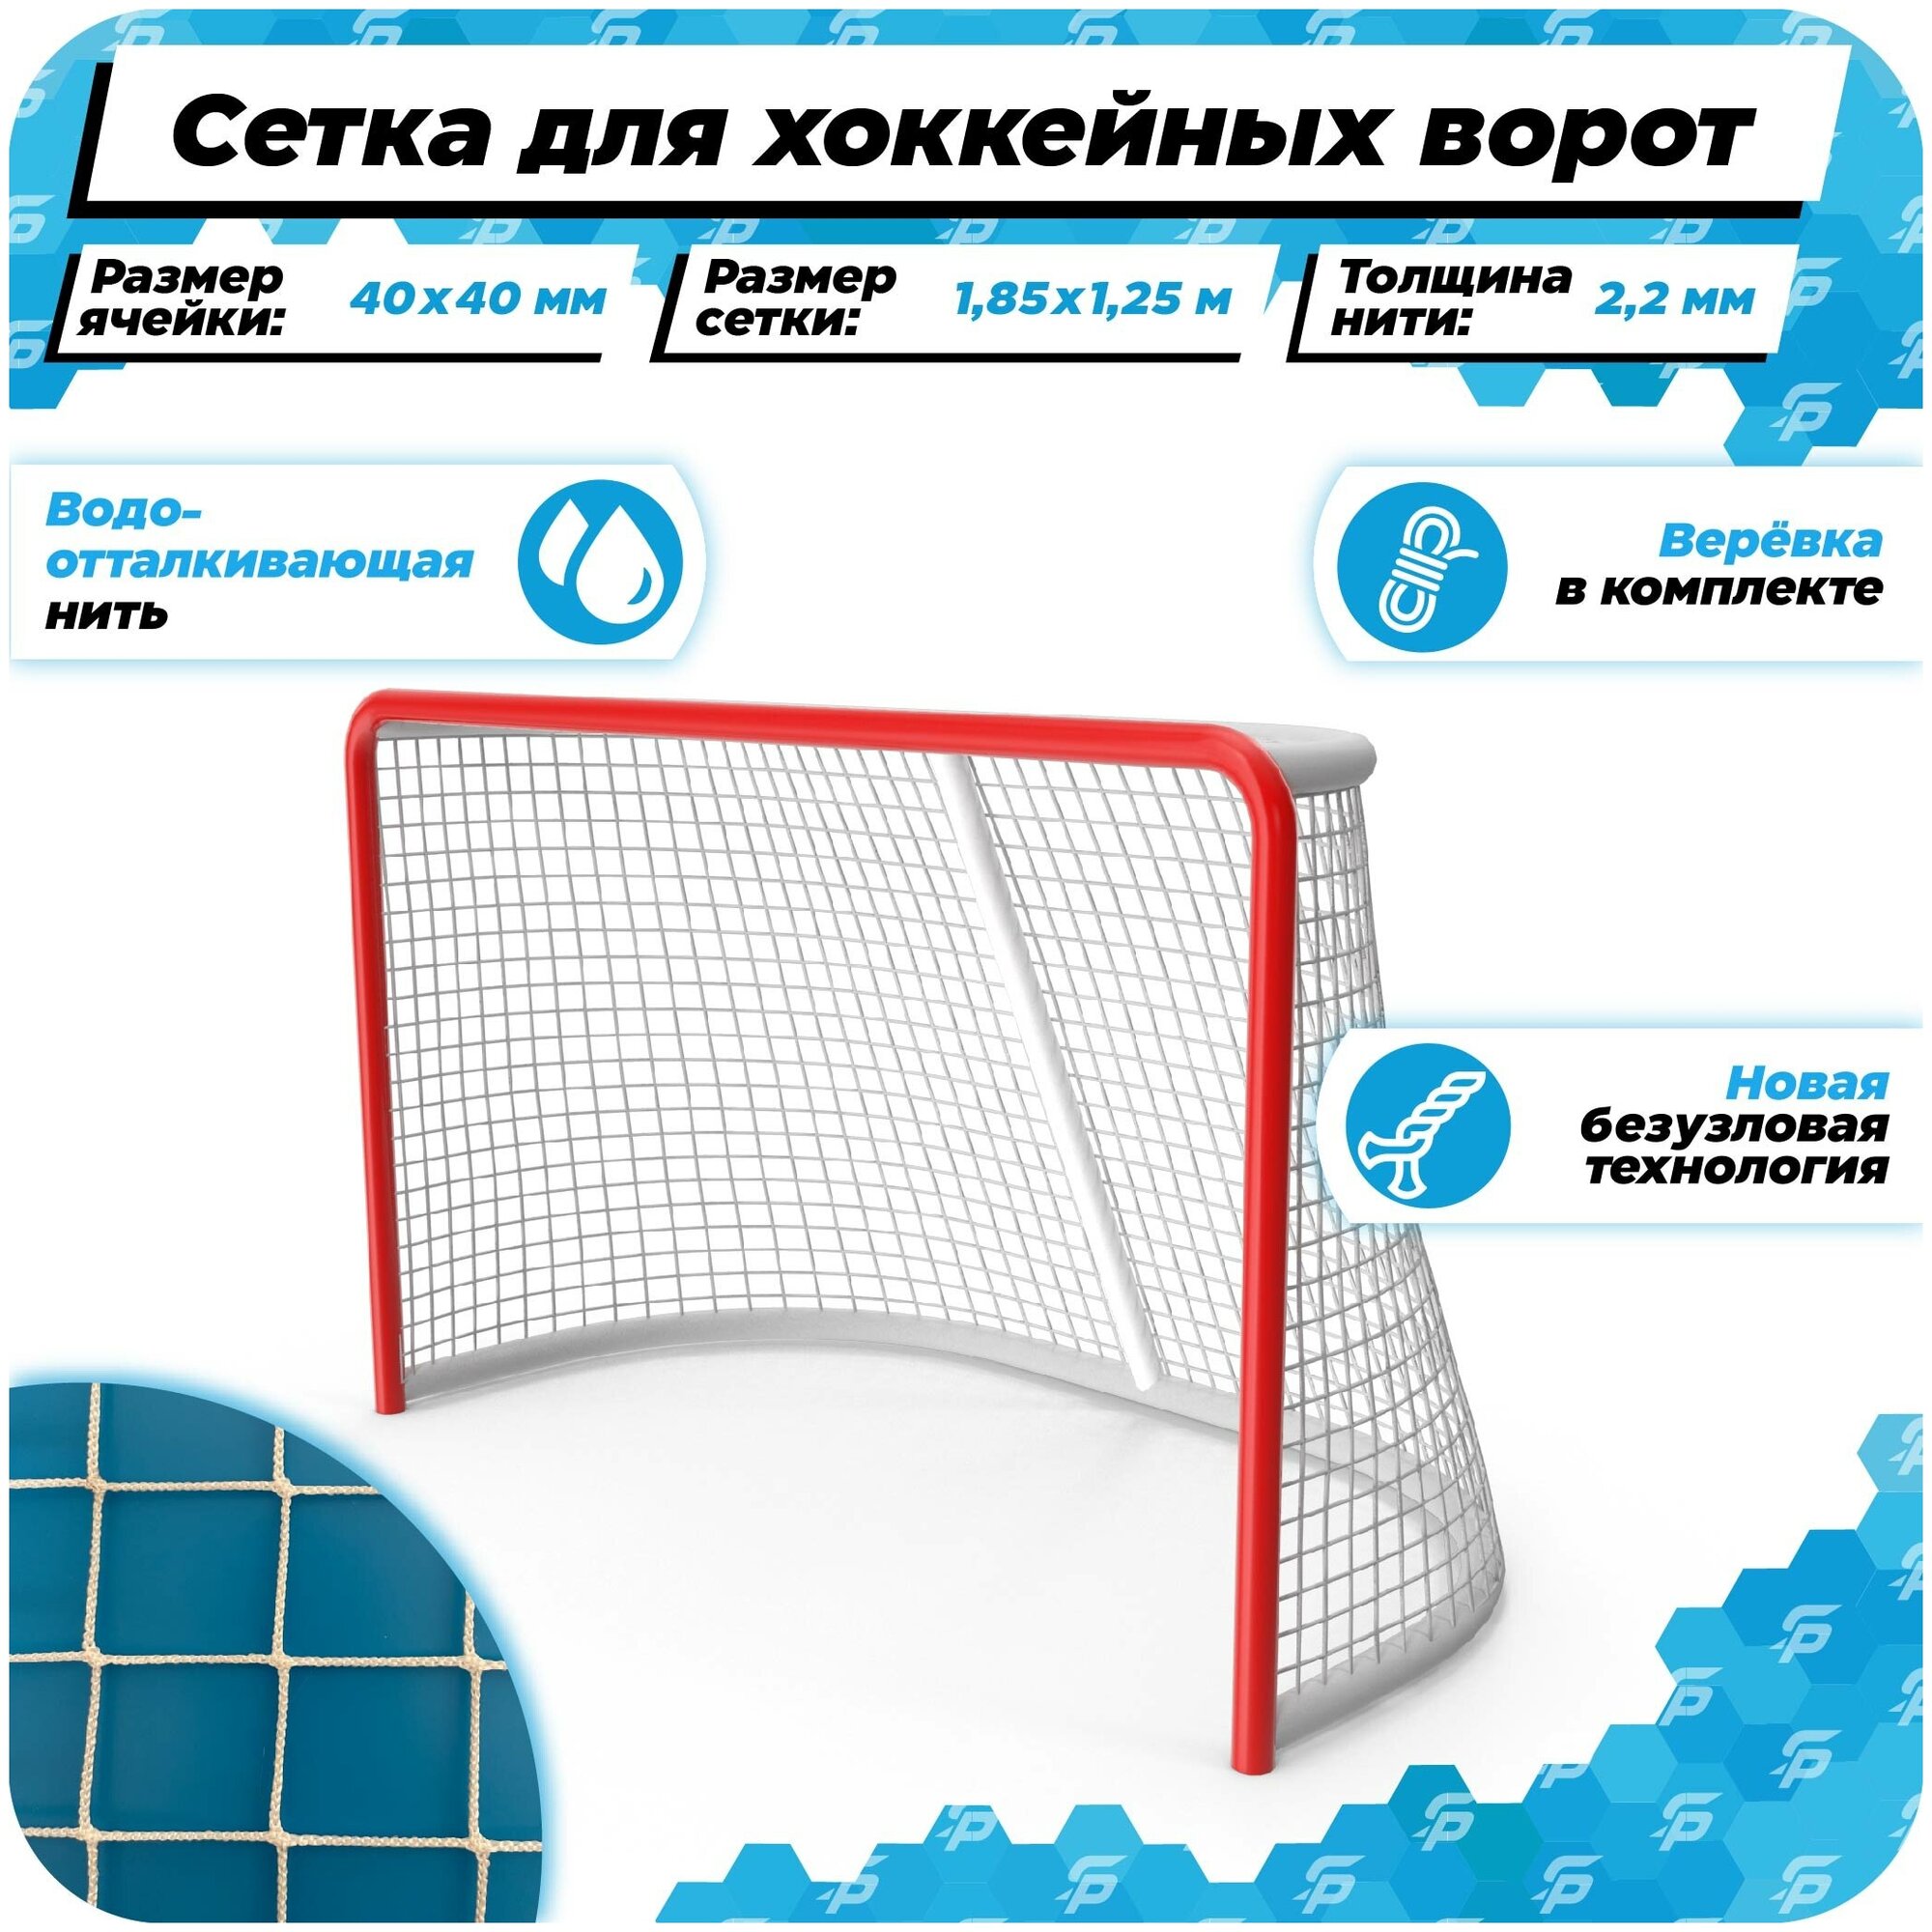 Сетка для хоккейных ворот 1,85 на 1,25 нить 2,2 мм веревка в комплекте